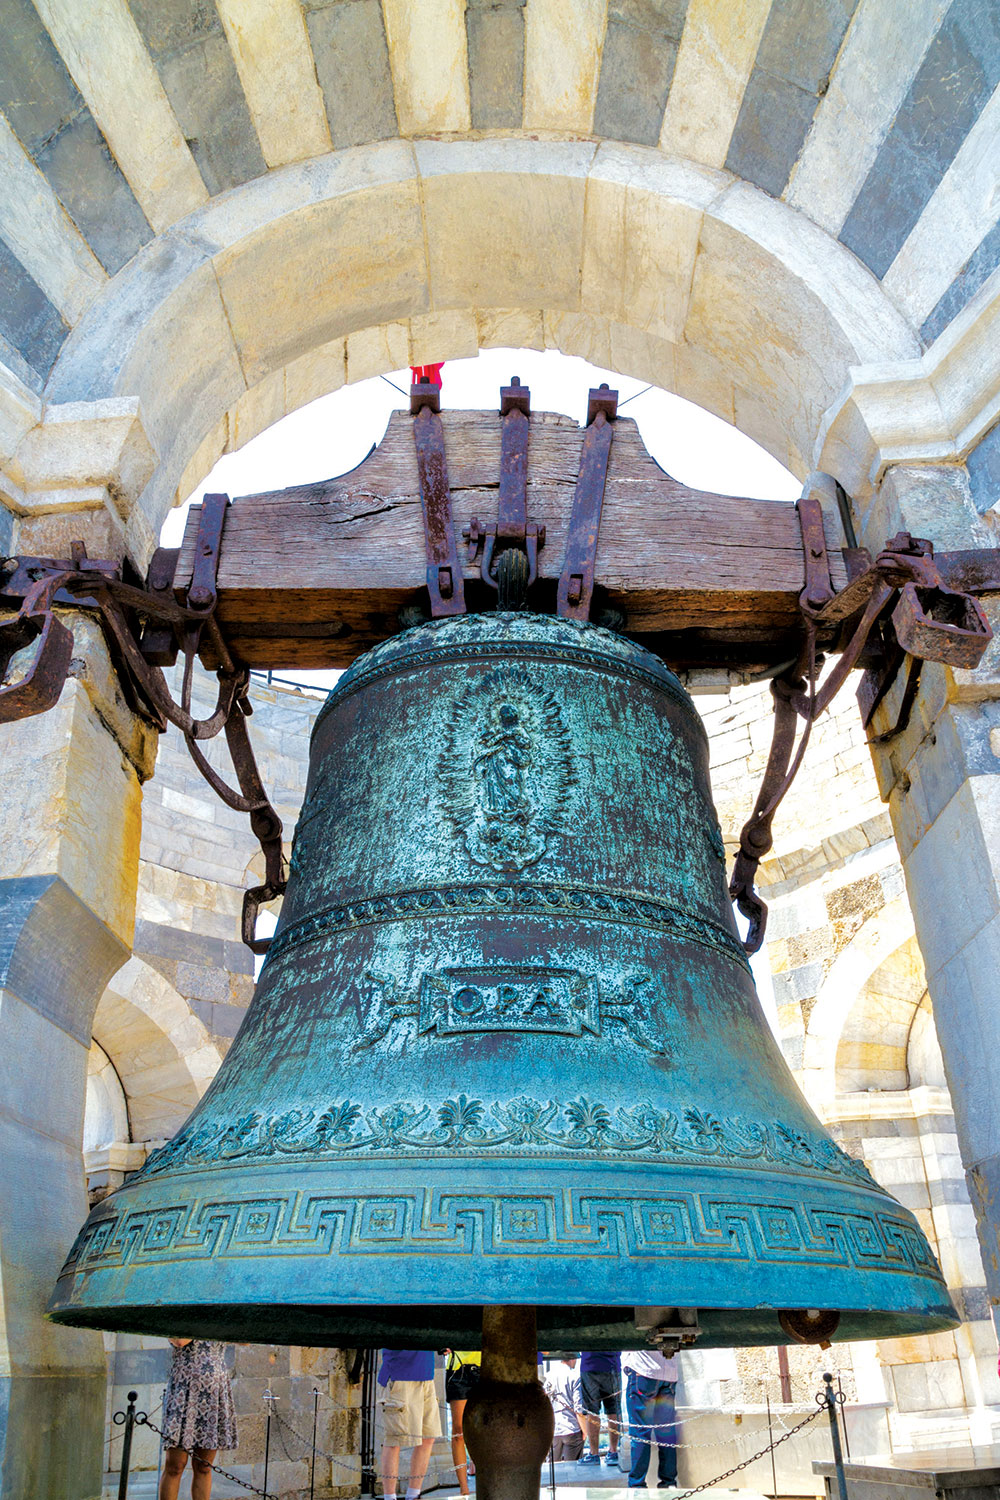 Dakle, zvono je pre i iznad svega glas, glas koji okuplja, glas koji je simbol slobode